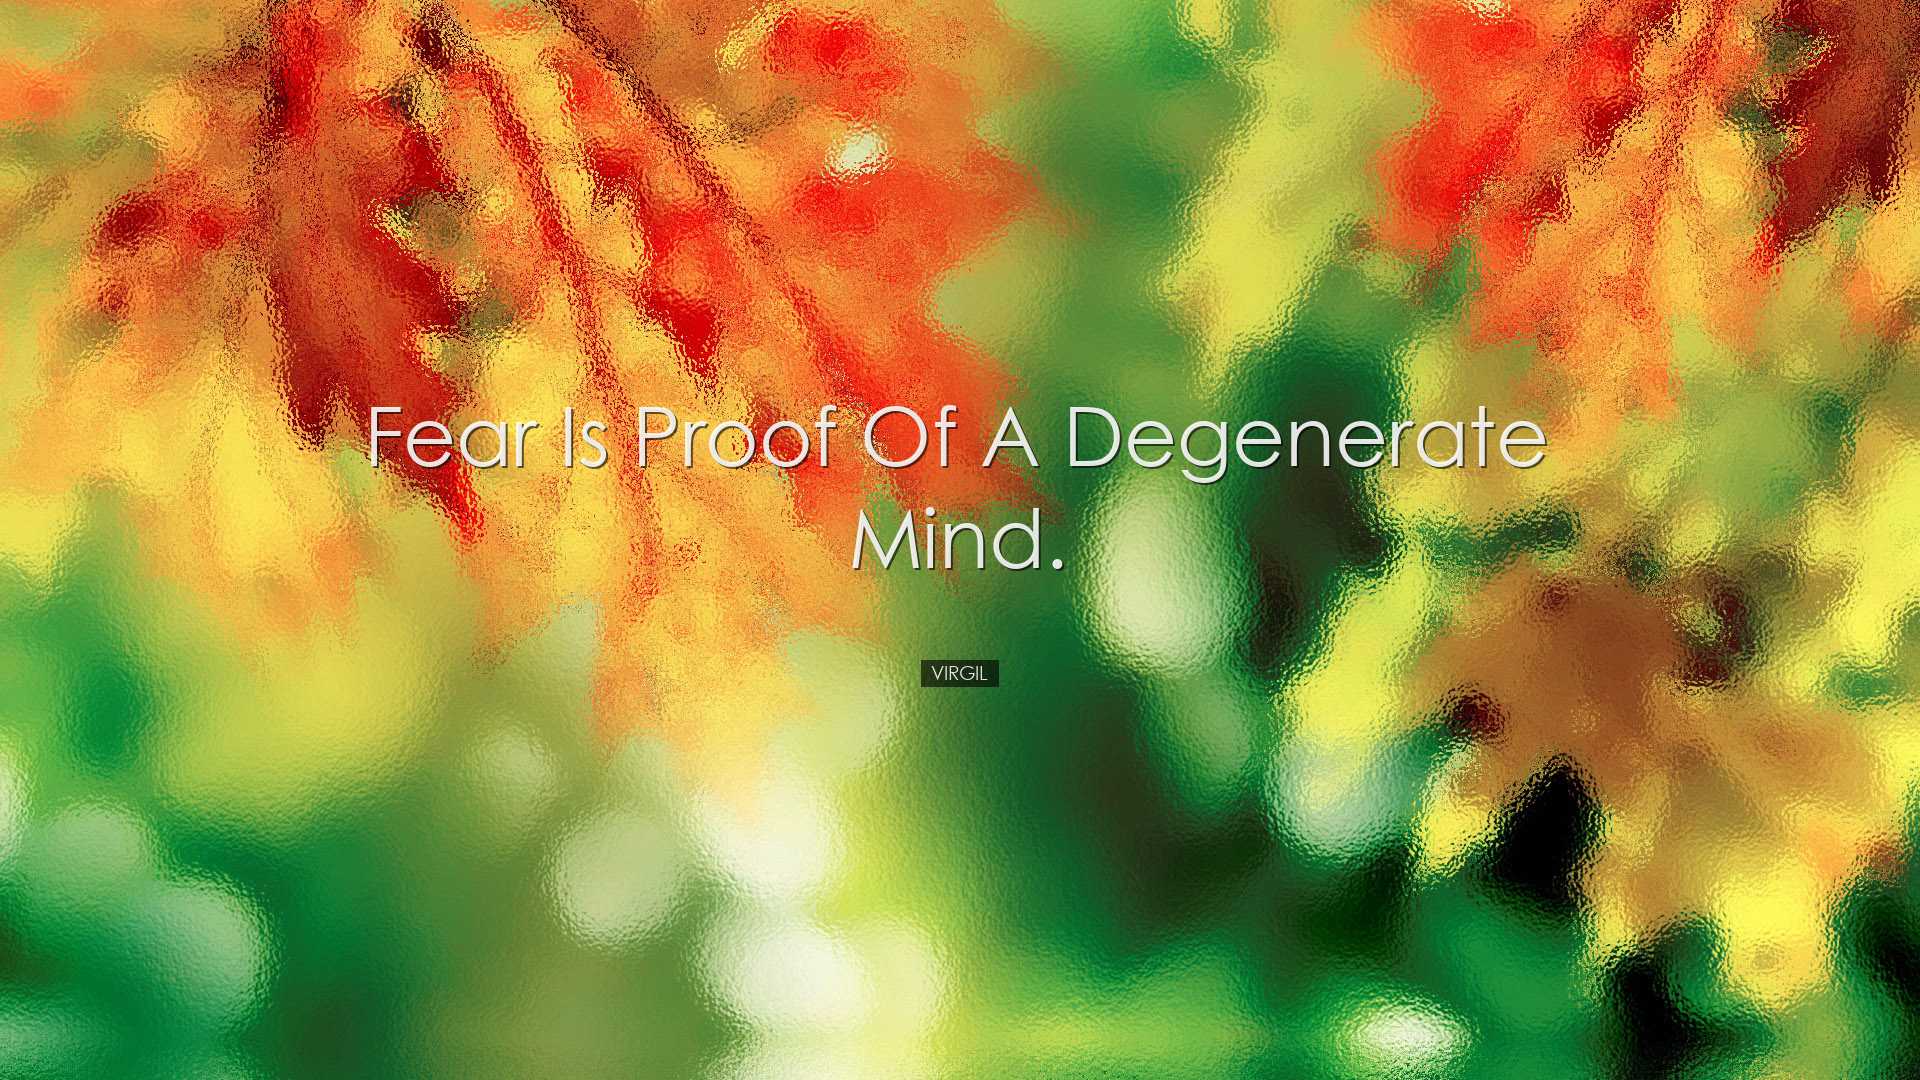 Fear is proof of a degenerate mind. - Virgil